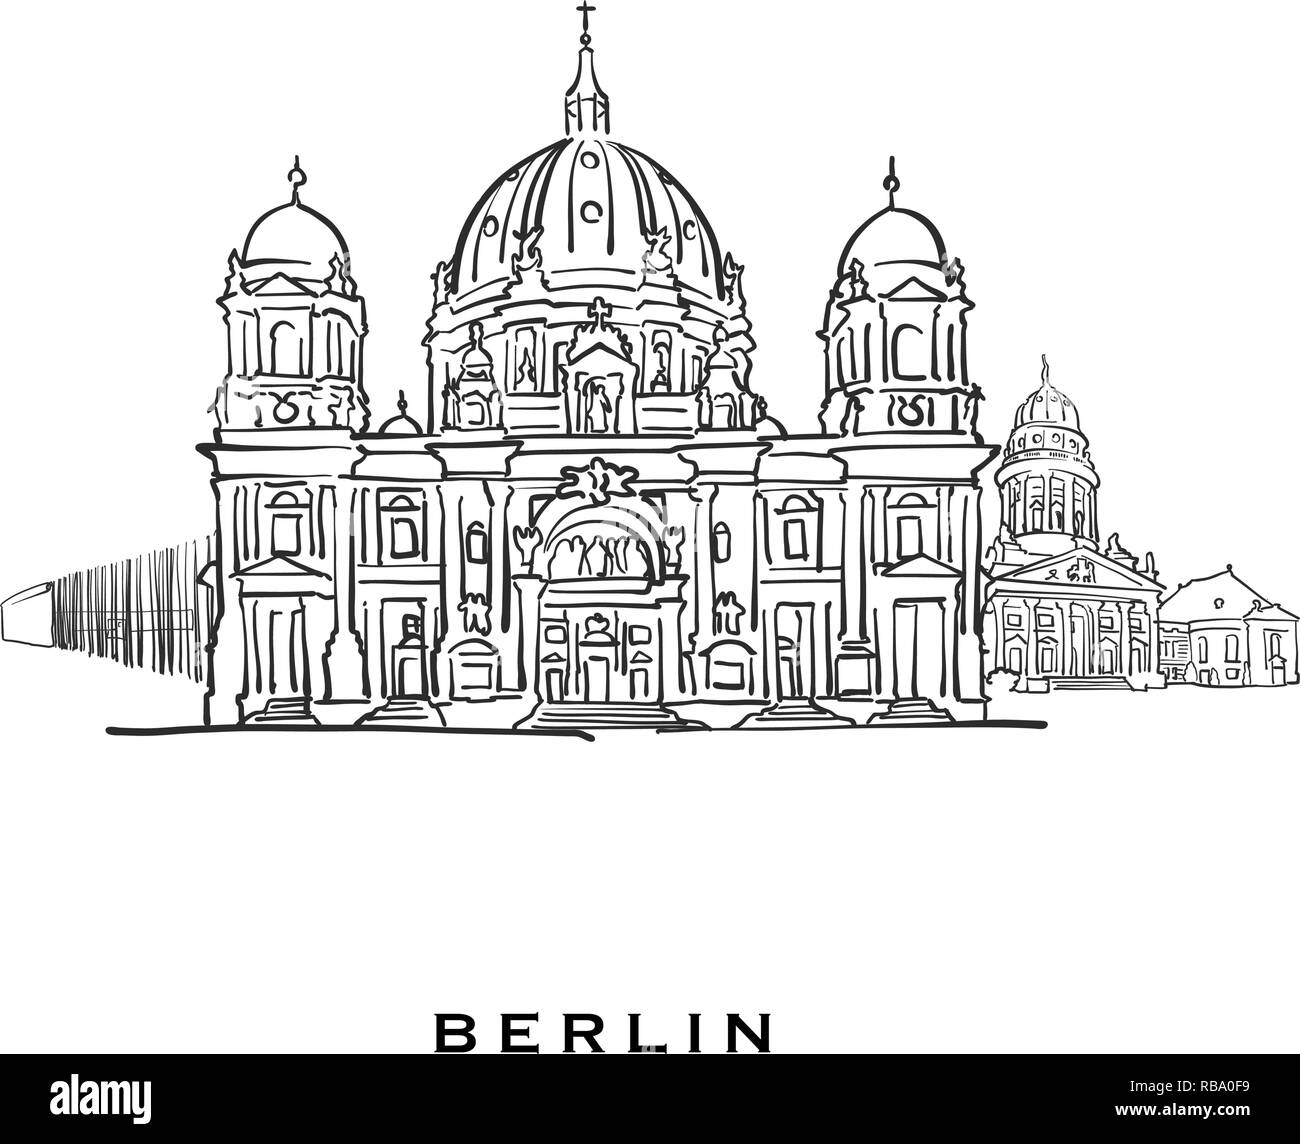 Berlin Deutschland berühmte Architektur. Vektor Skizze auf weißem Hintergrund getrennt aufgeführt. Architektur Zeichnungen von allen europäischen Hauptstädten. Stock Vektor